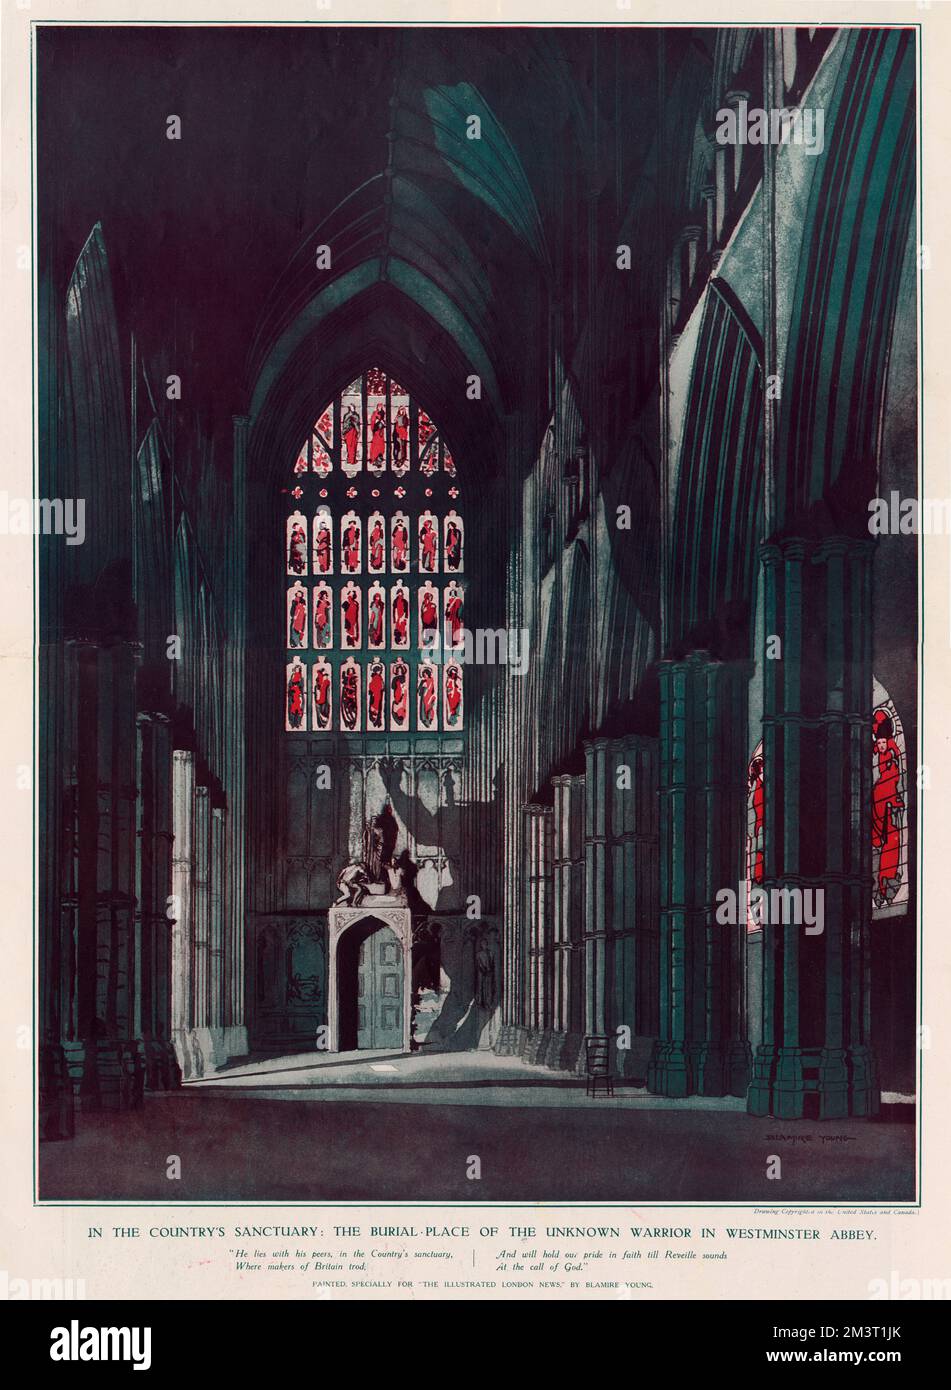 Nel santuario del Paese: Il luogo di sepoltura del Guerriero Sconosciuto nell'Abbazia di Westminster di William Blamire Young (1862 - 1935). Foto Stock